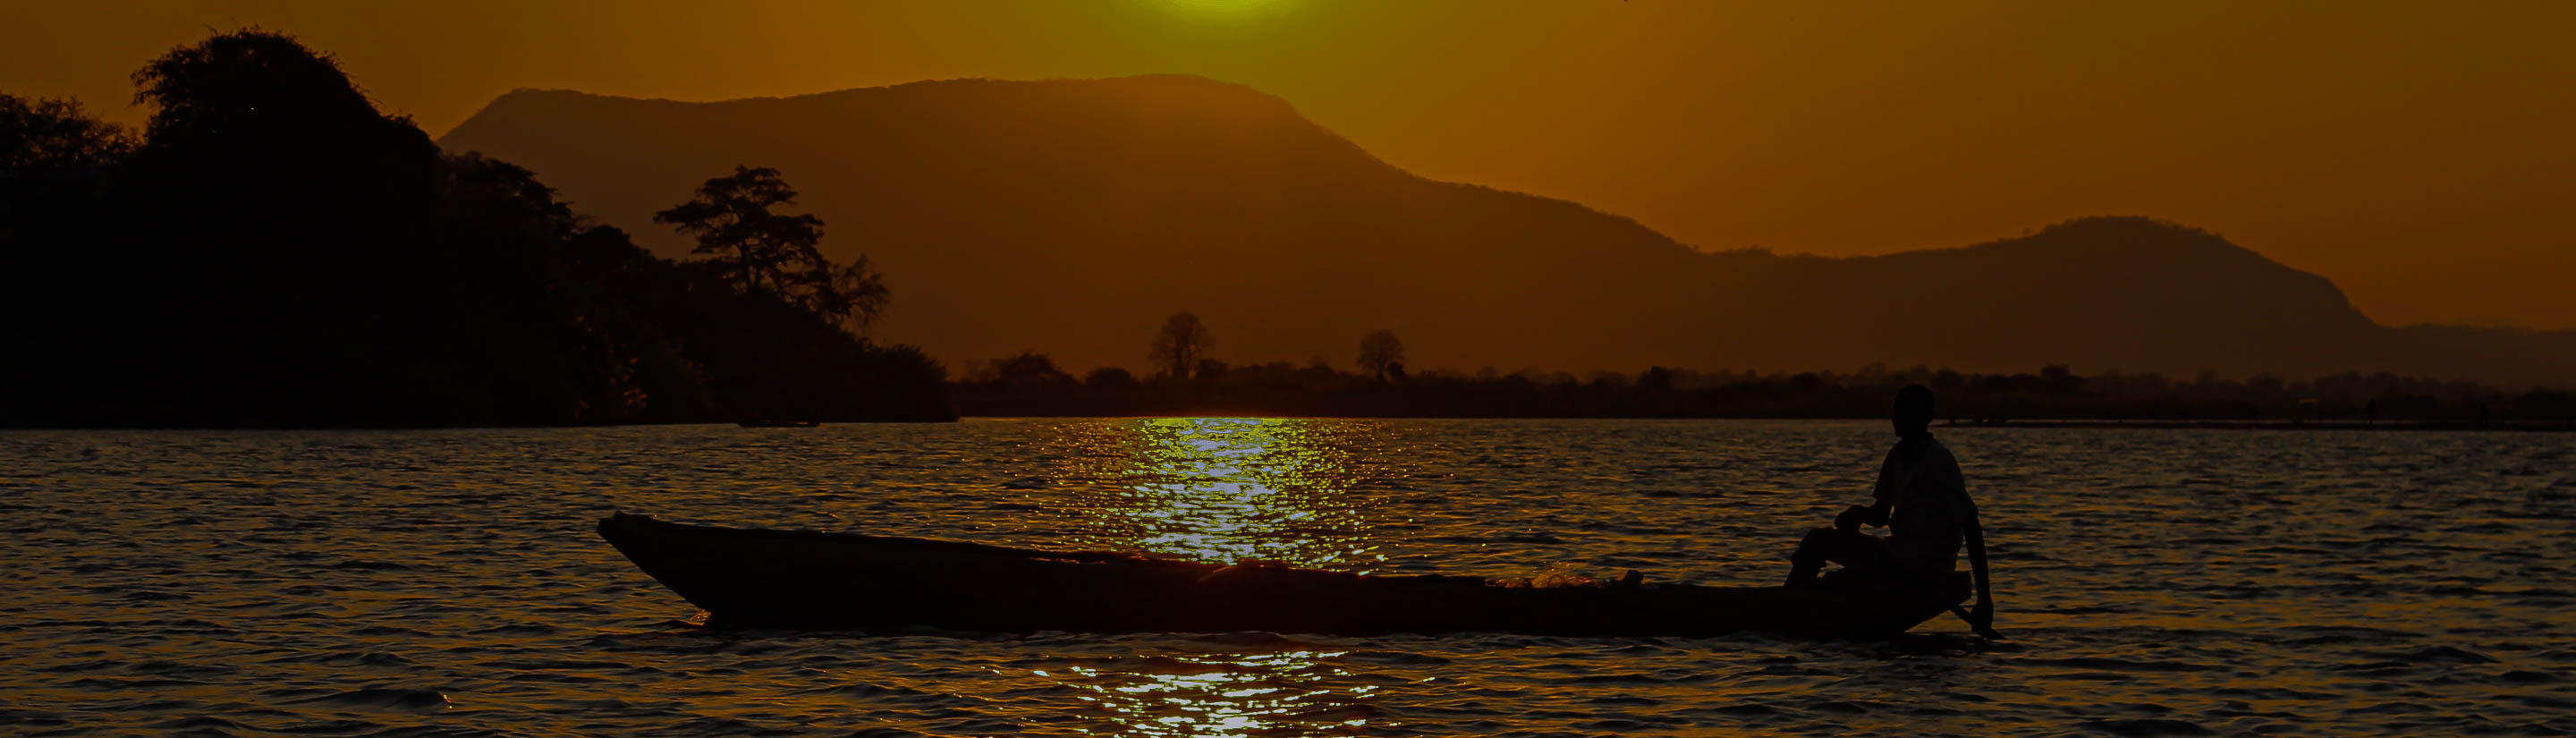 Mann im Einbaumboot auf See im Sonnenuntergang in Malawi.